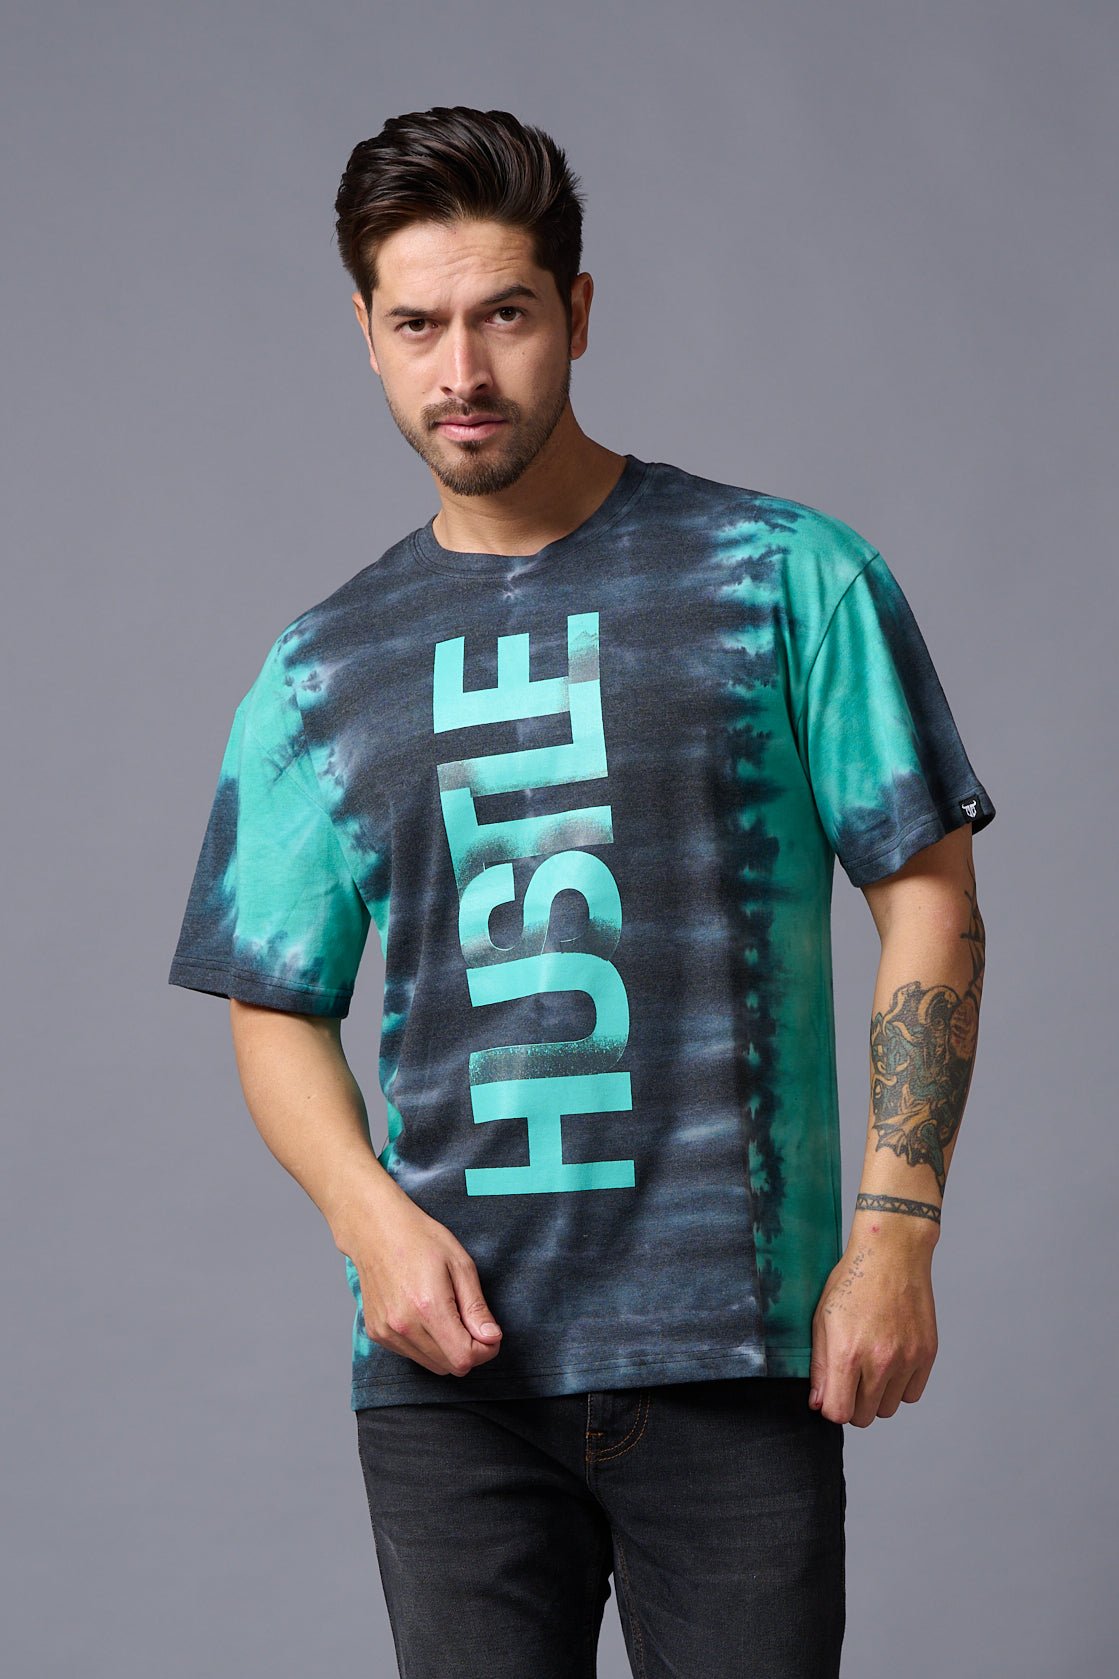 Hustle Printed Tye Die Oversized T-Shirt for Men - Go Devil